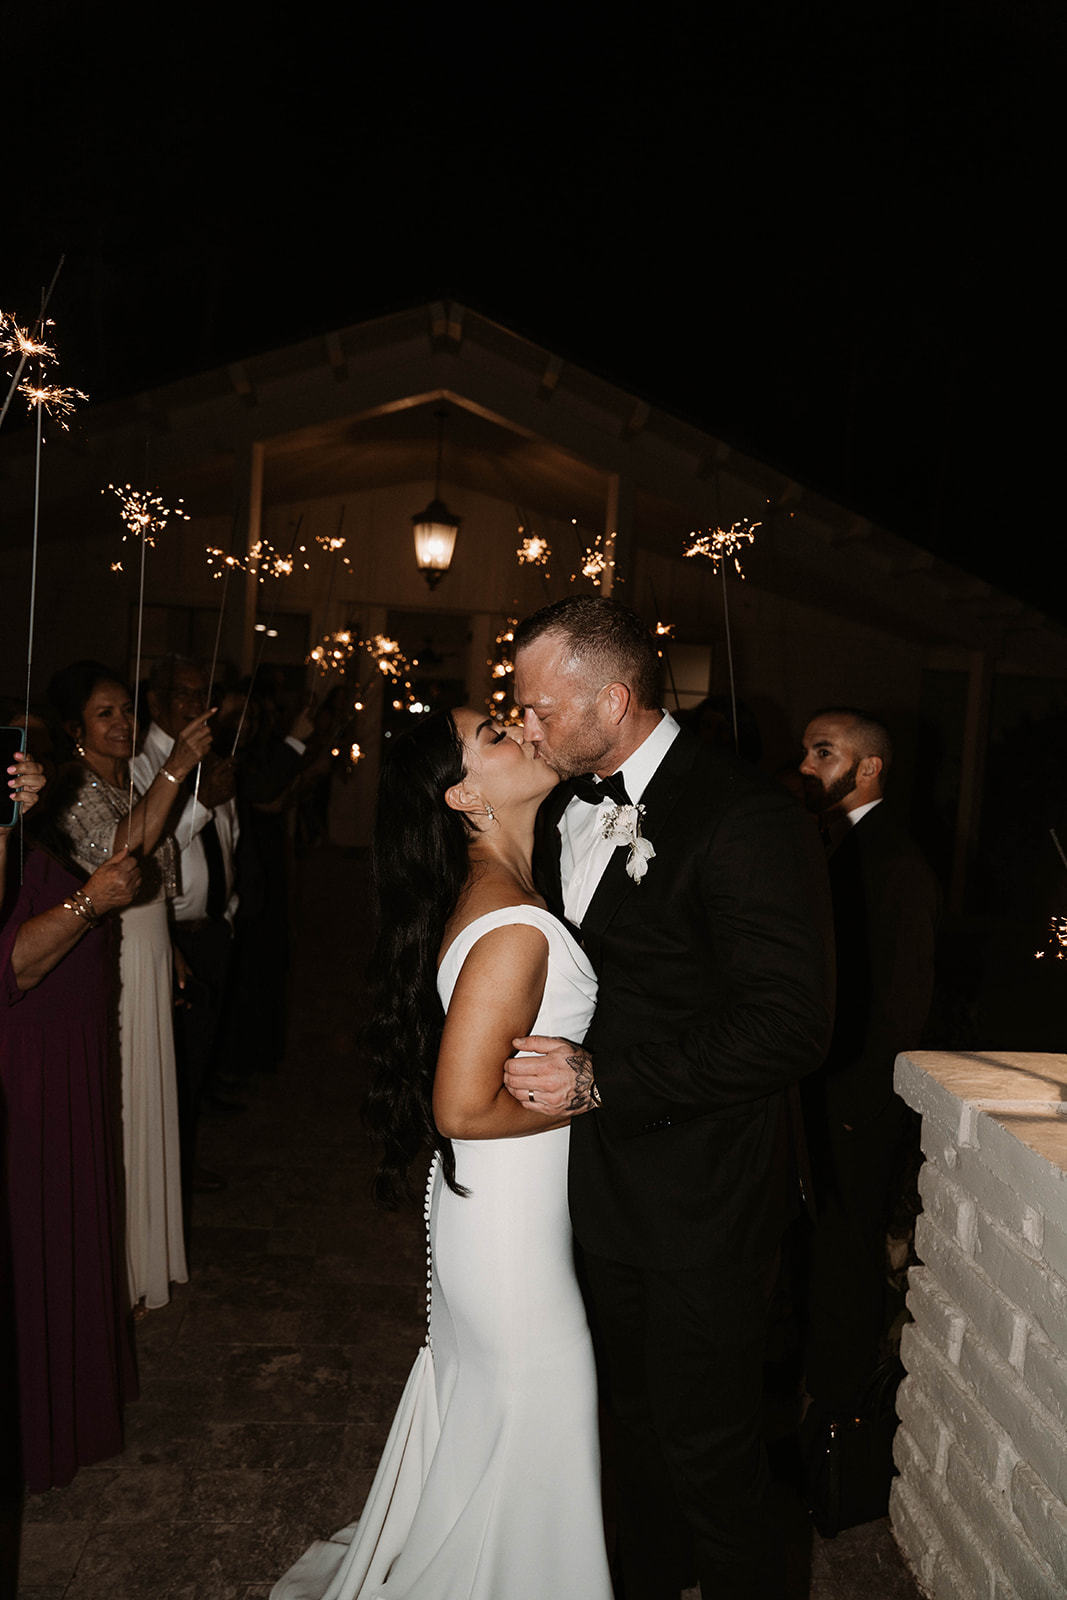 Sparkler exit at Wedding venue in arizona